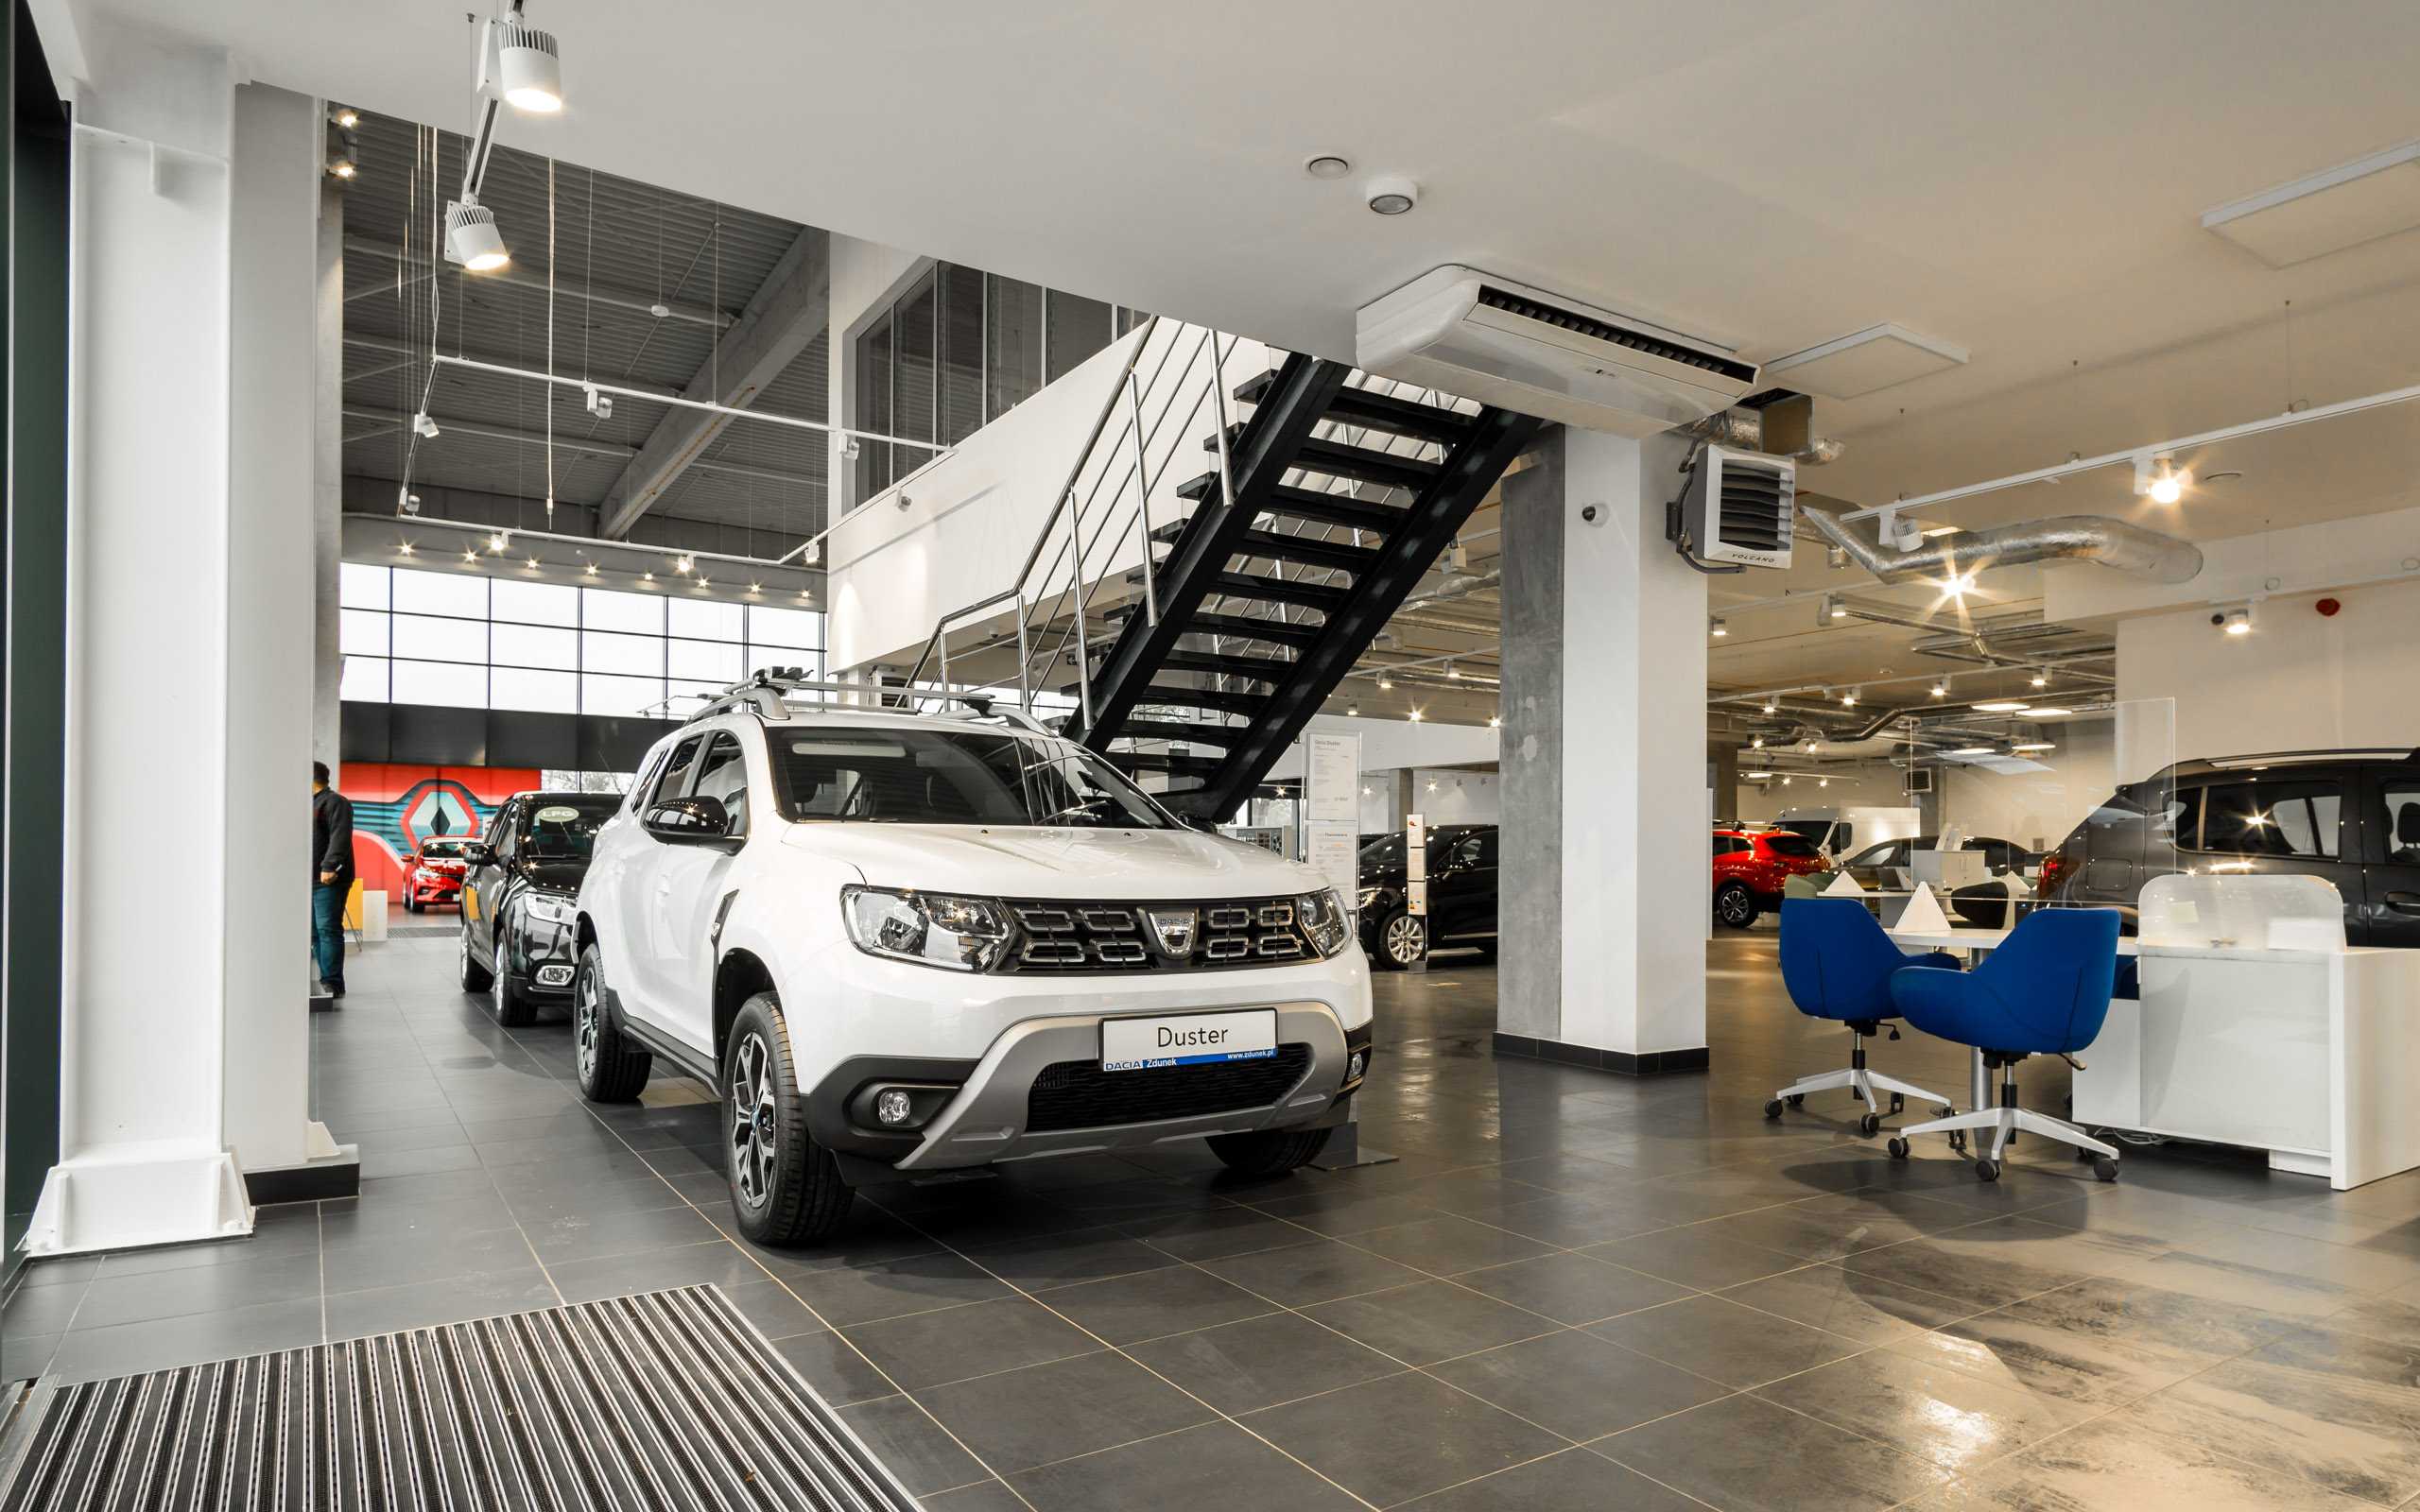 Nowy salon Renault i Dacia w Gdańsku 1400 m2 i 30